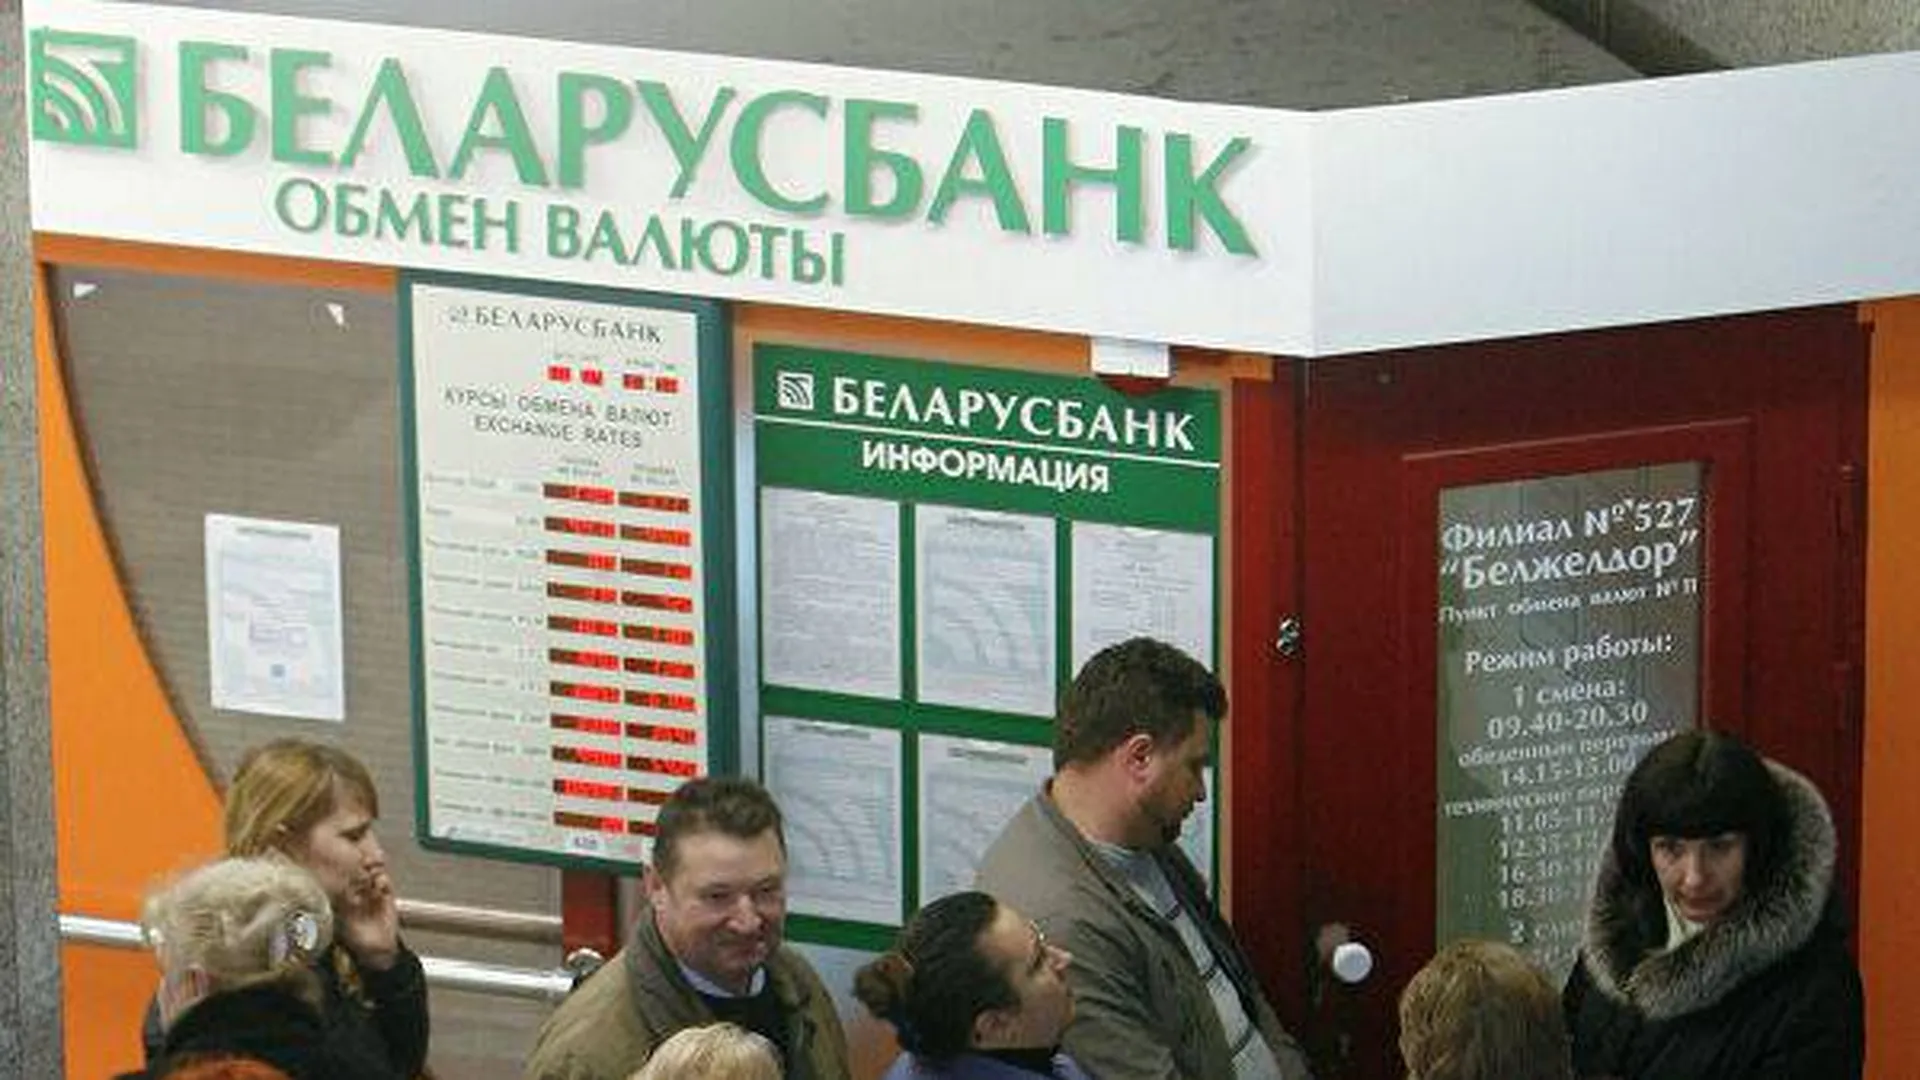 Белорусские банки валюта. Беларусбанк обмен валют. Обменный пункт на белорусском вокзале Беларусбанк. Обменный пункт на белорусском вокзале. Обмен валюты у вокзала.